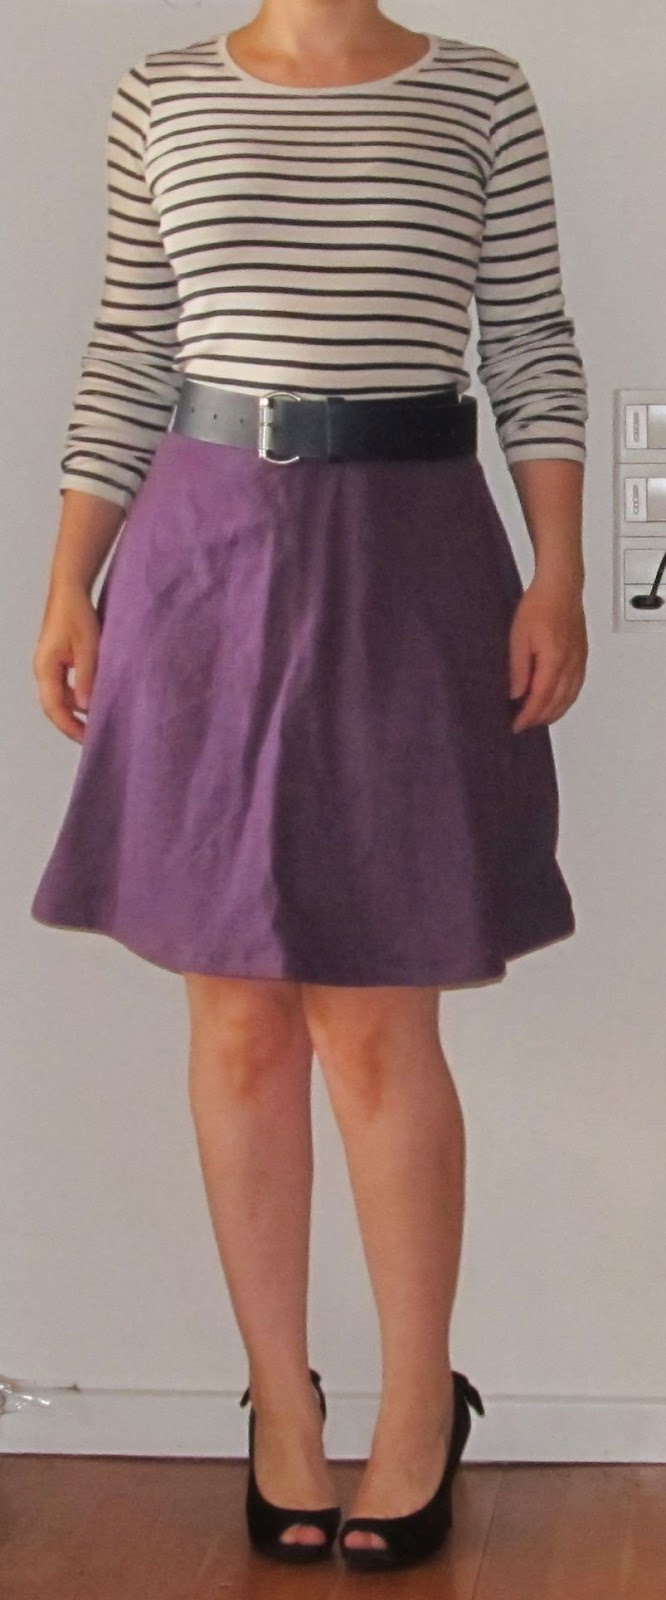 Kjole til nederdel og redesign af stiletter